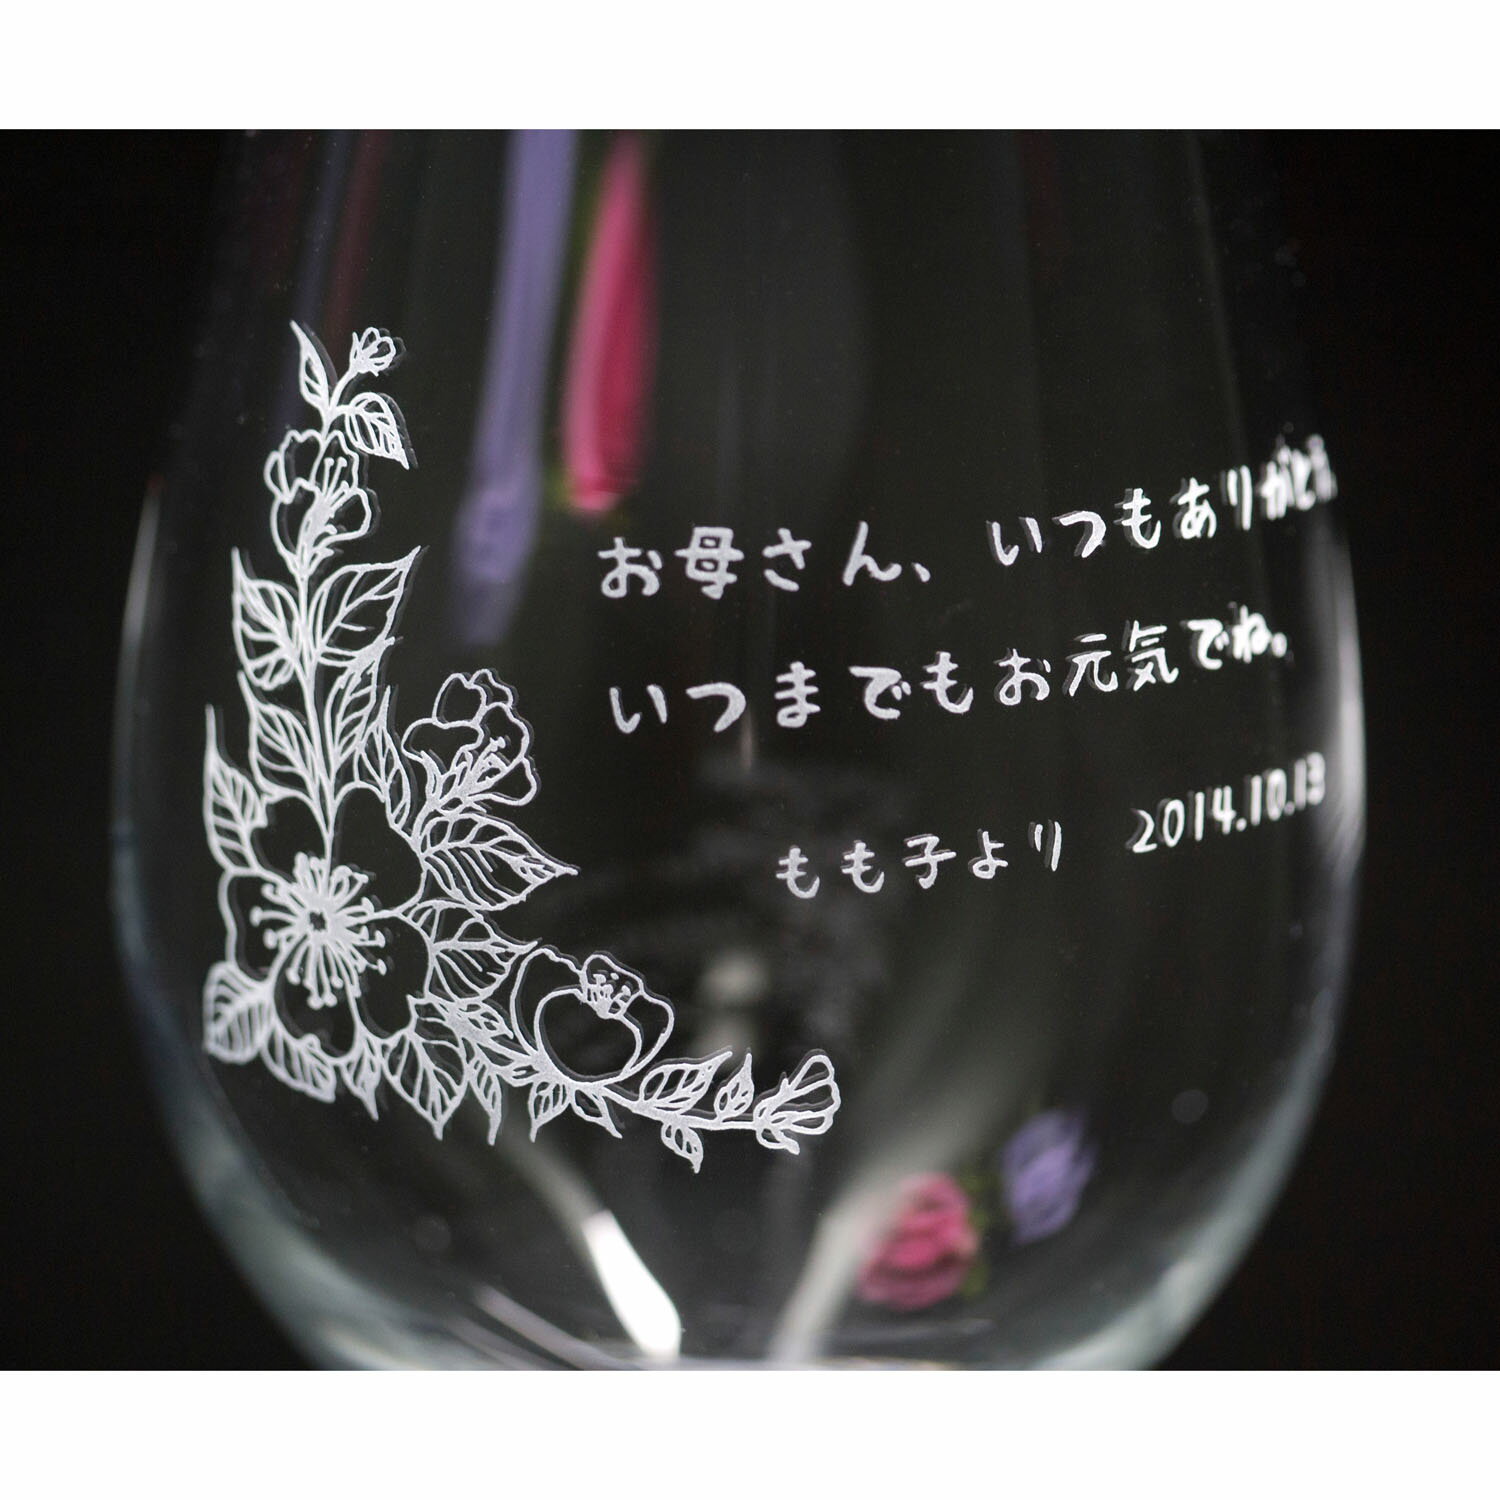 名入れワイングラス 名入れ ワイングラス シュトルツル クリスタルワイングラス カラーステム ギフトボックス サンドブラスト 彫刻 文字入れプレゼント メッセージグラス